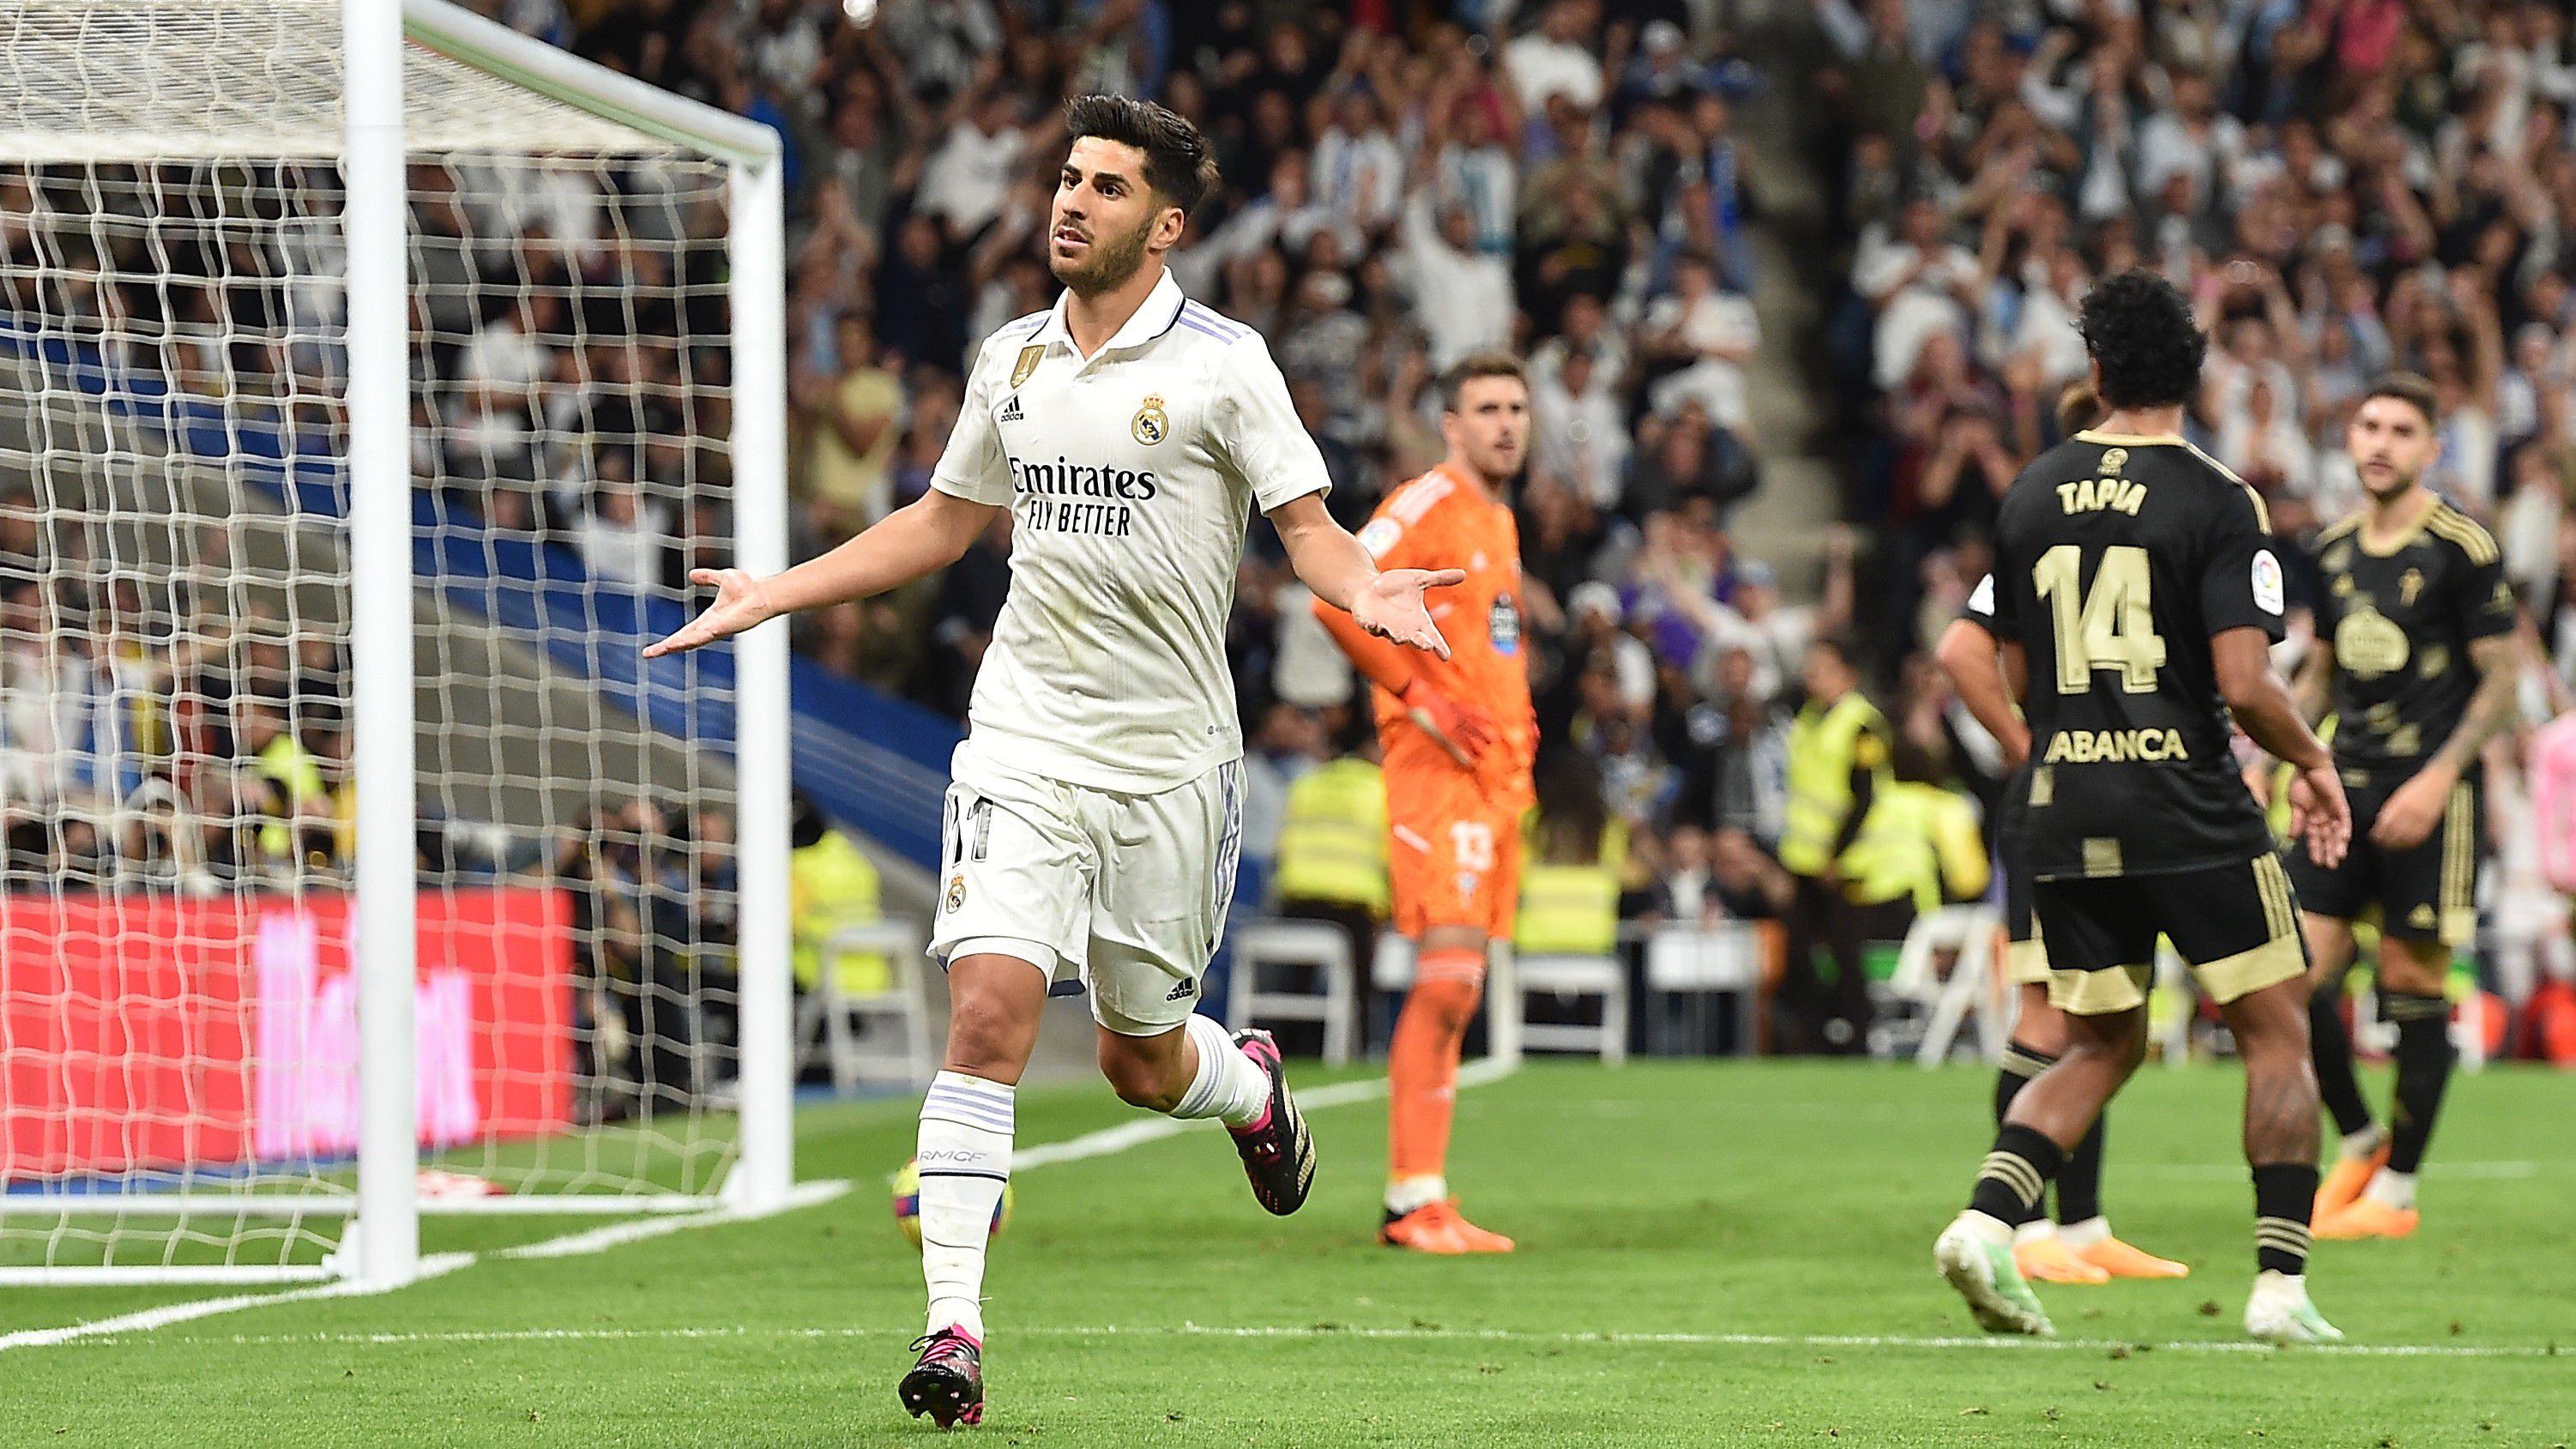 Zsinórban negyedszer nyert két góllal a Real Madrid